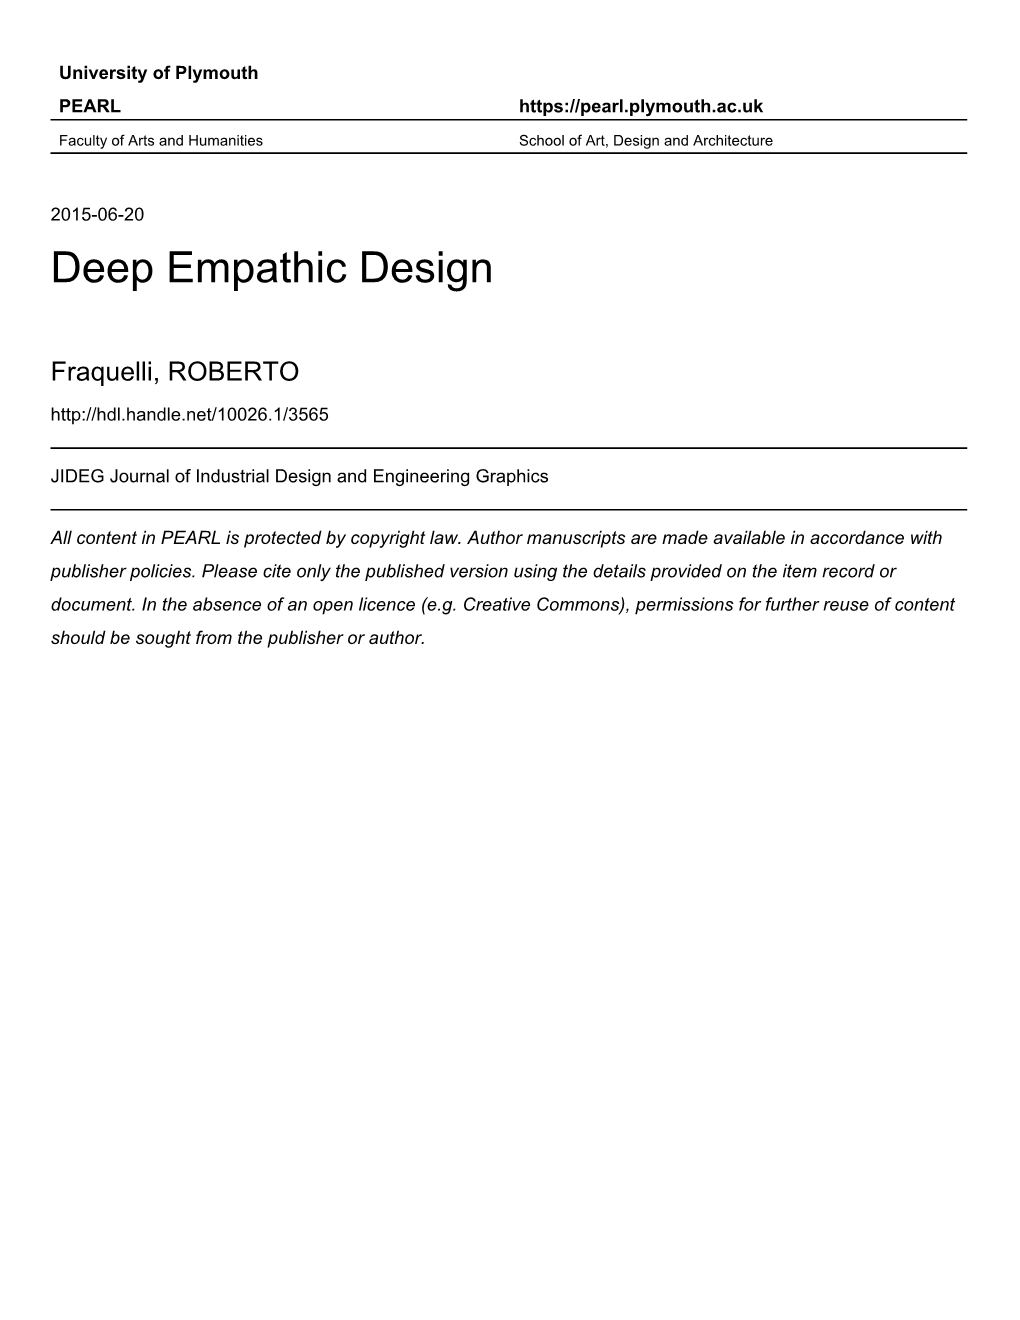 Deep Empathic Design Abstract Empathic Design Is Often Described As a Creativ